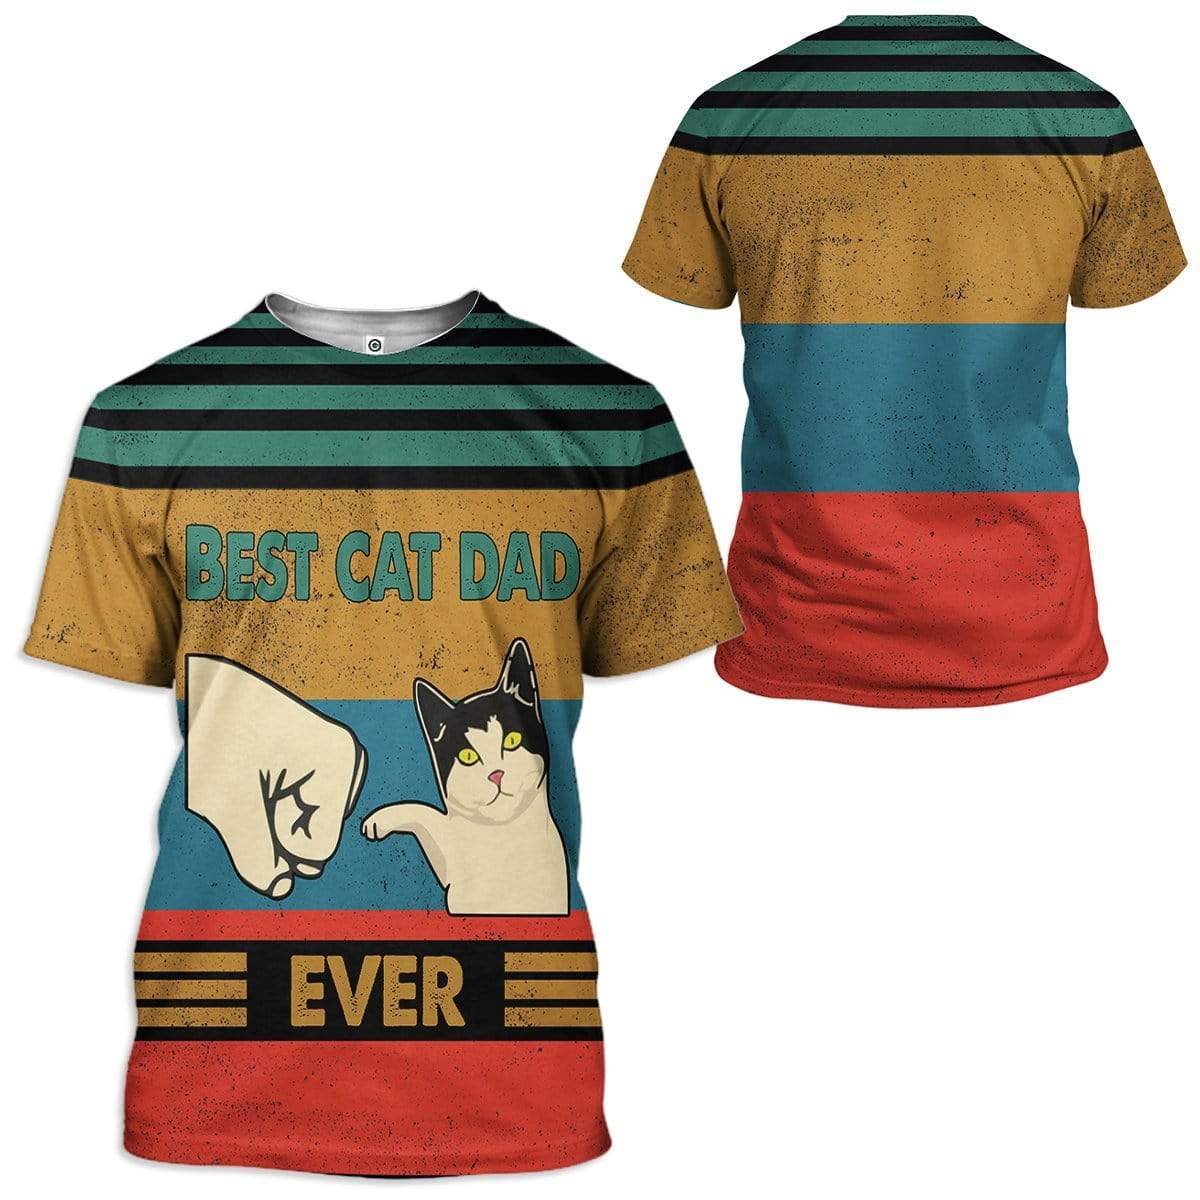 专给养猫男人的 AOP T恤设计模板